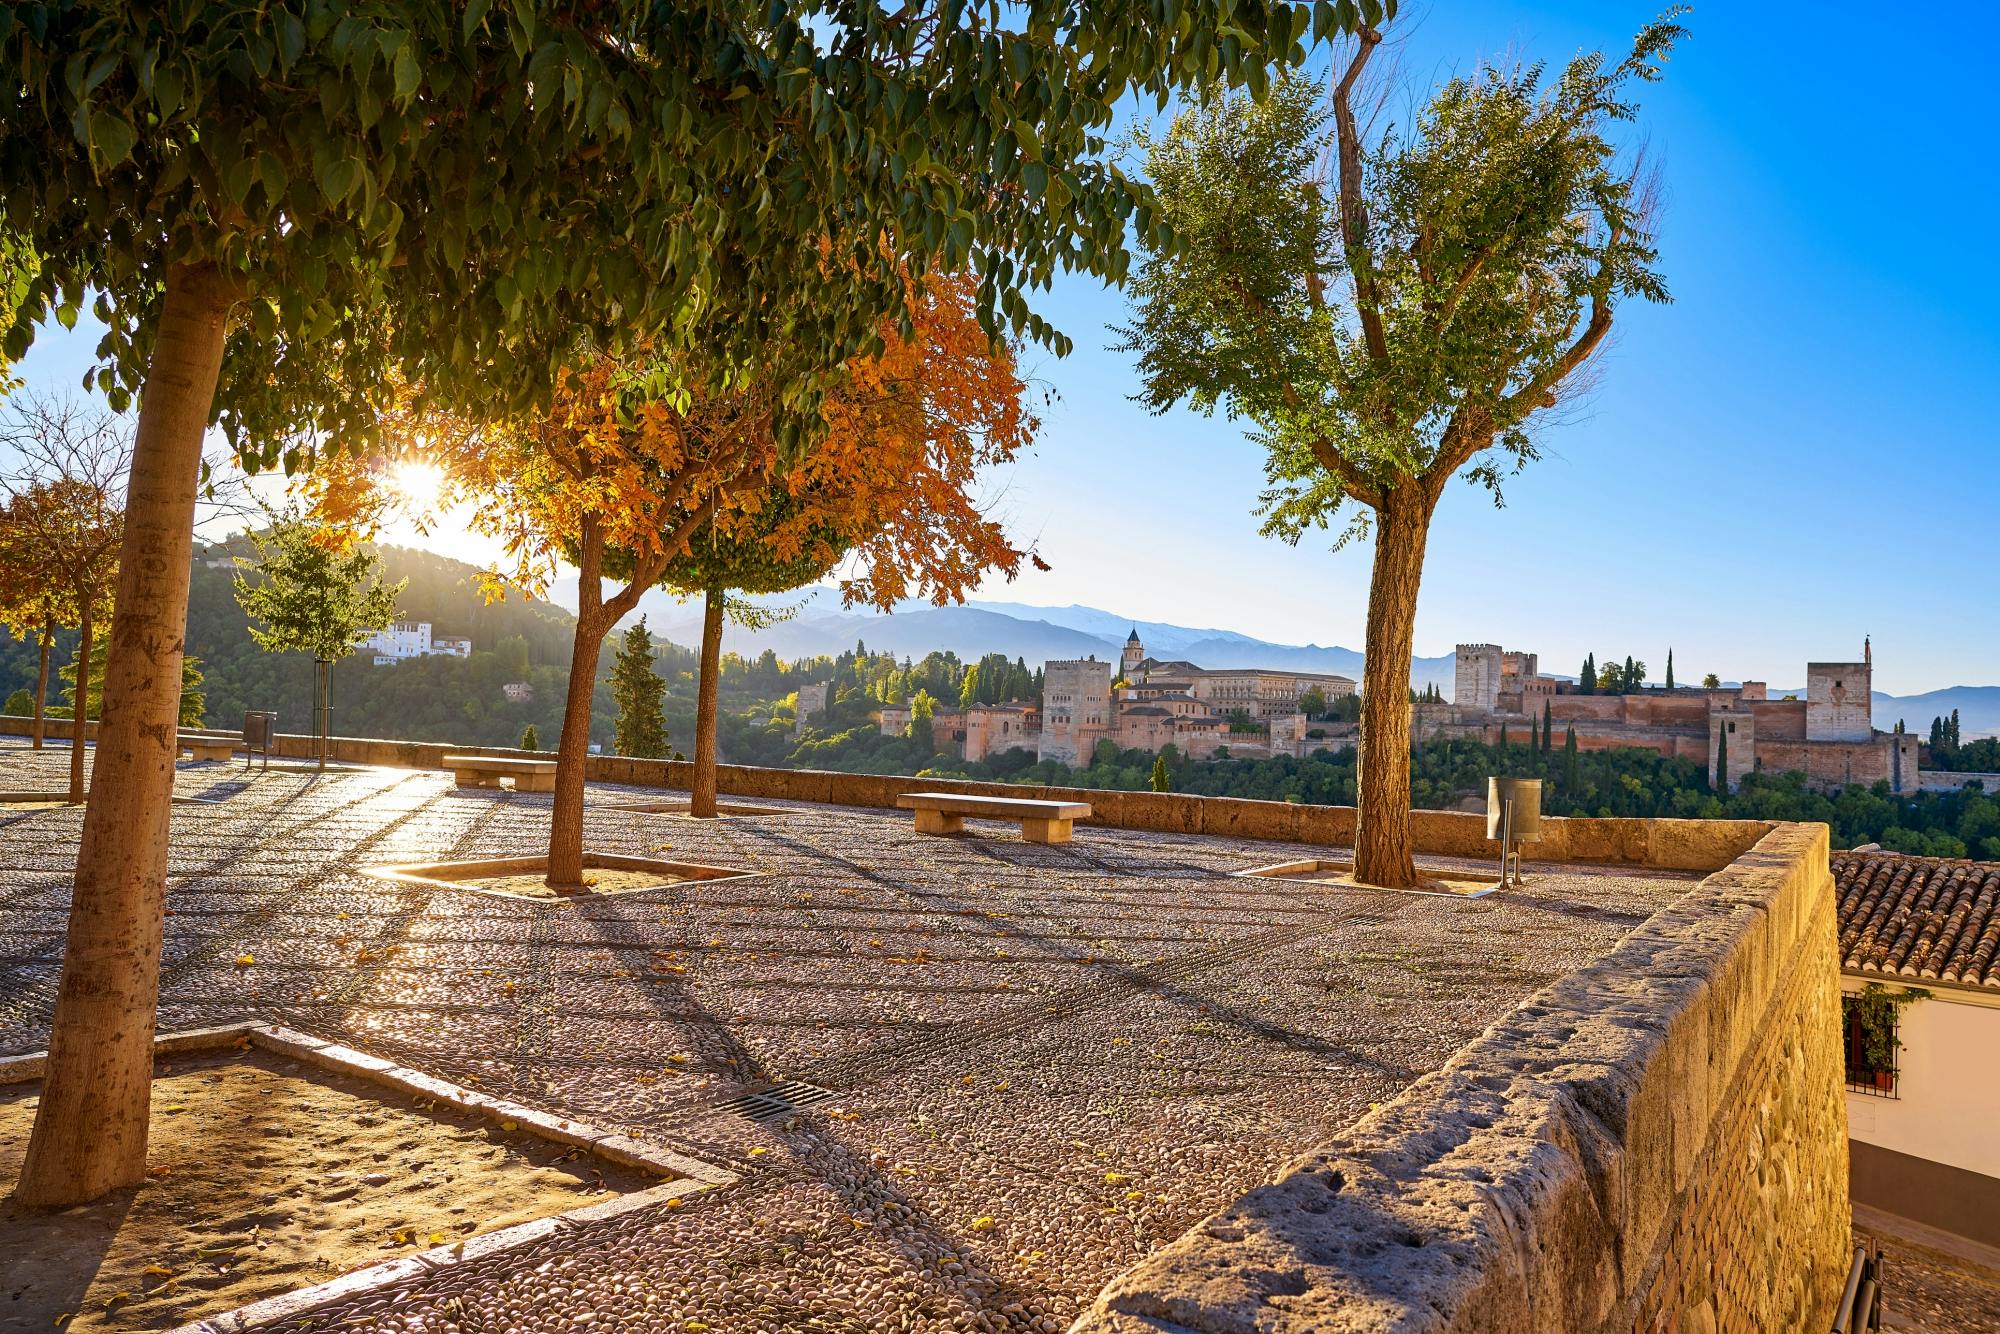 Dagtocht naar Granada vanuit Malaga op uw gemak